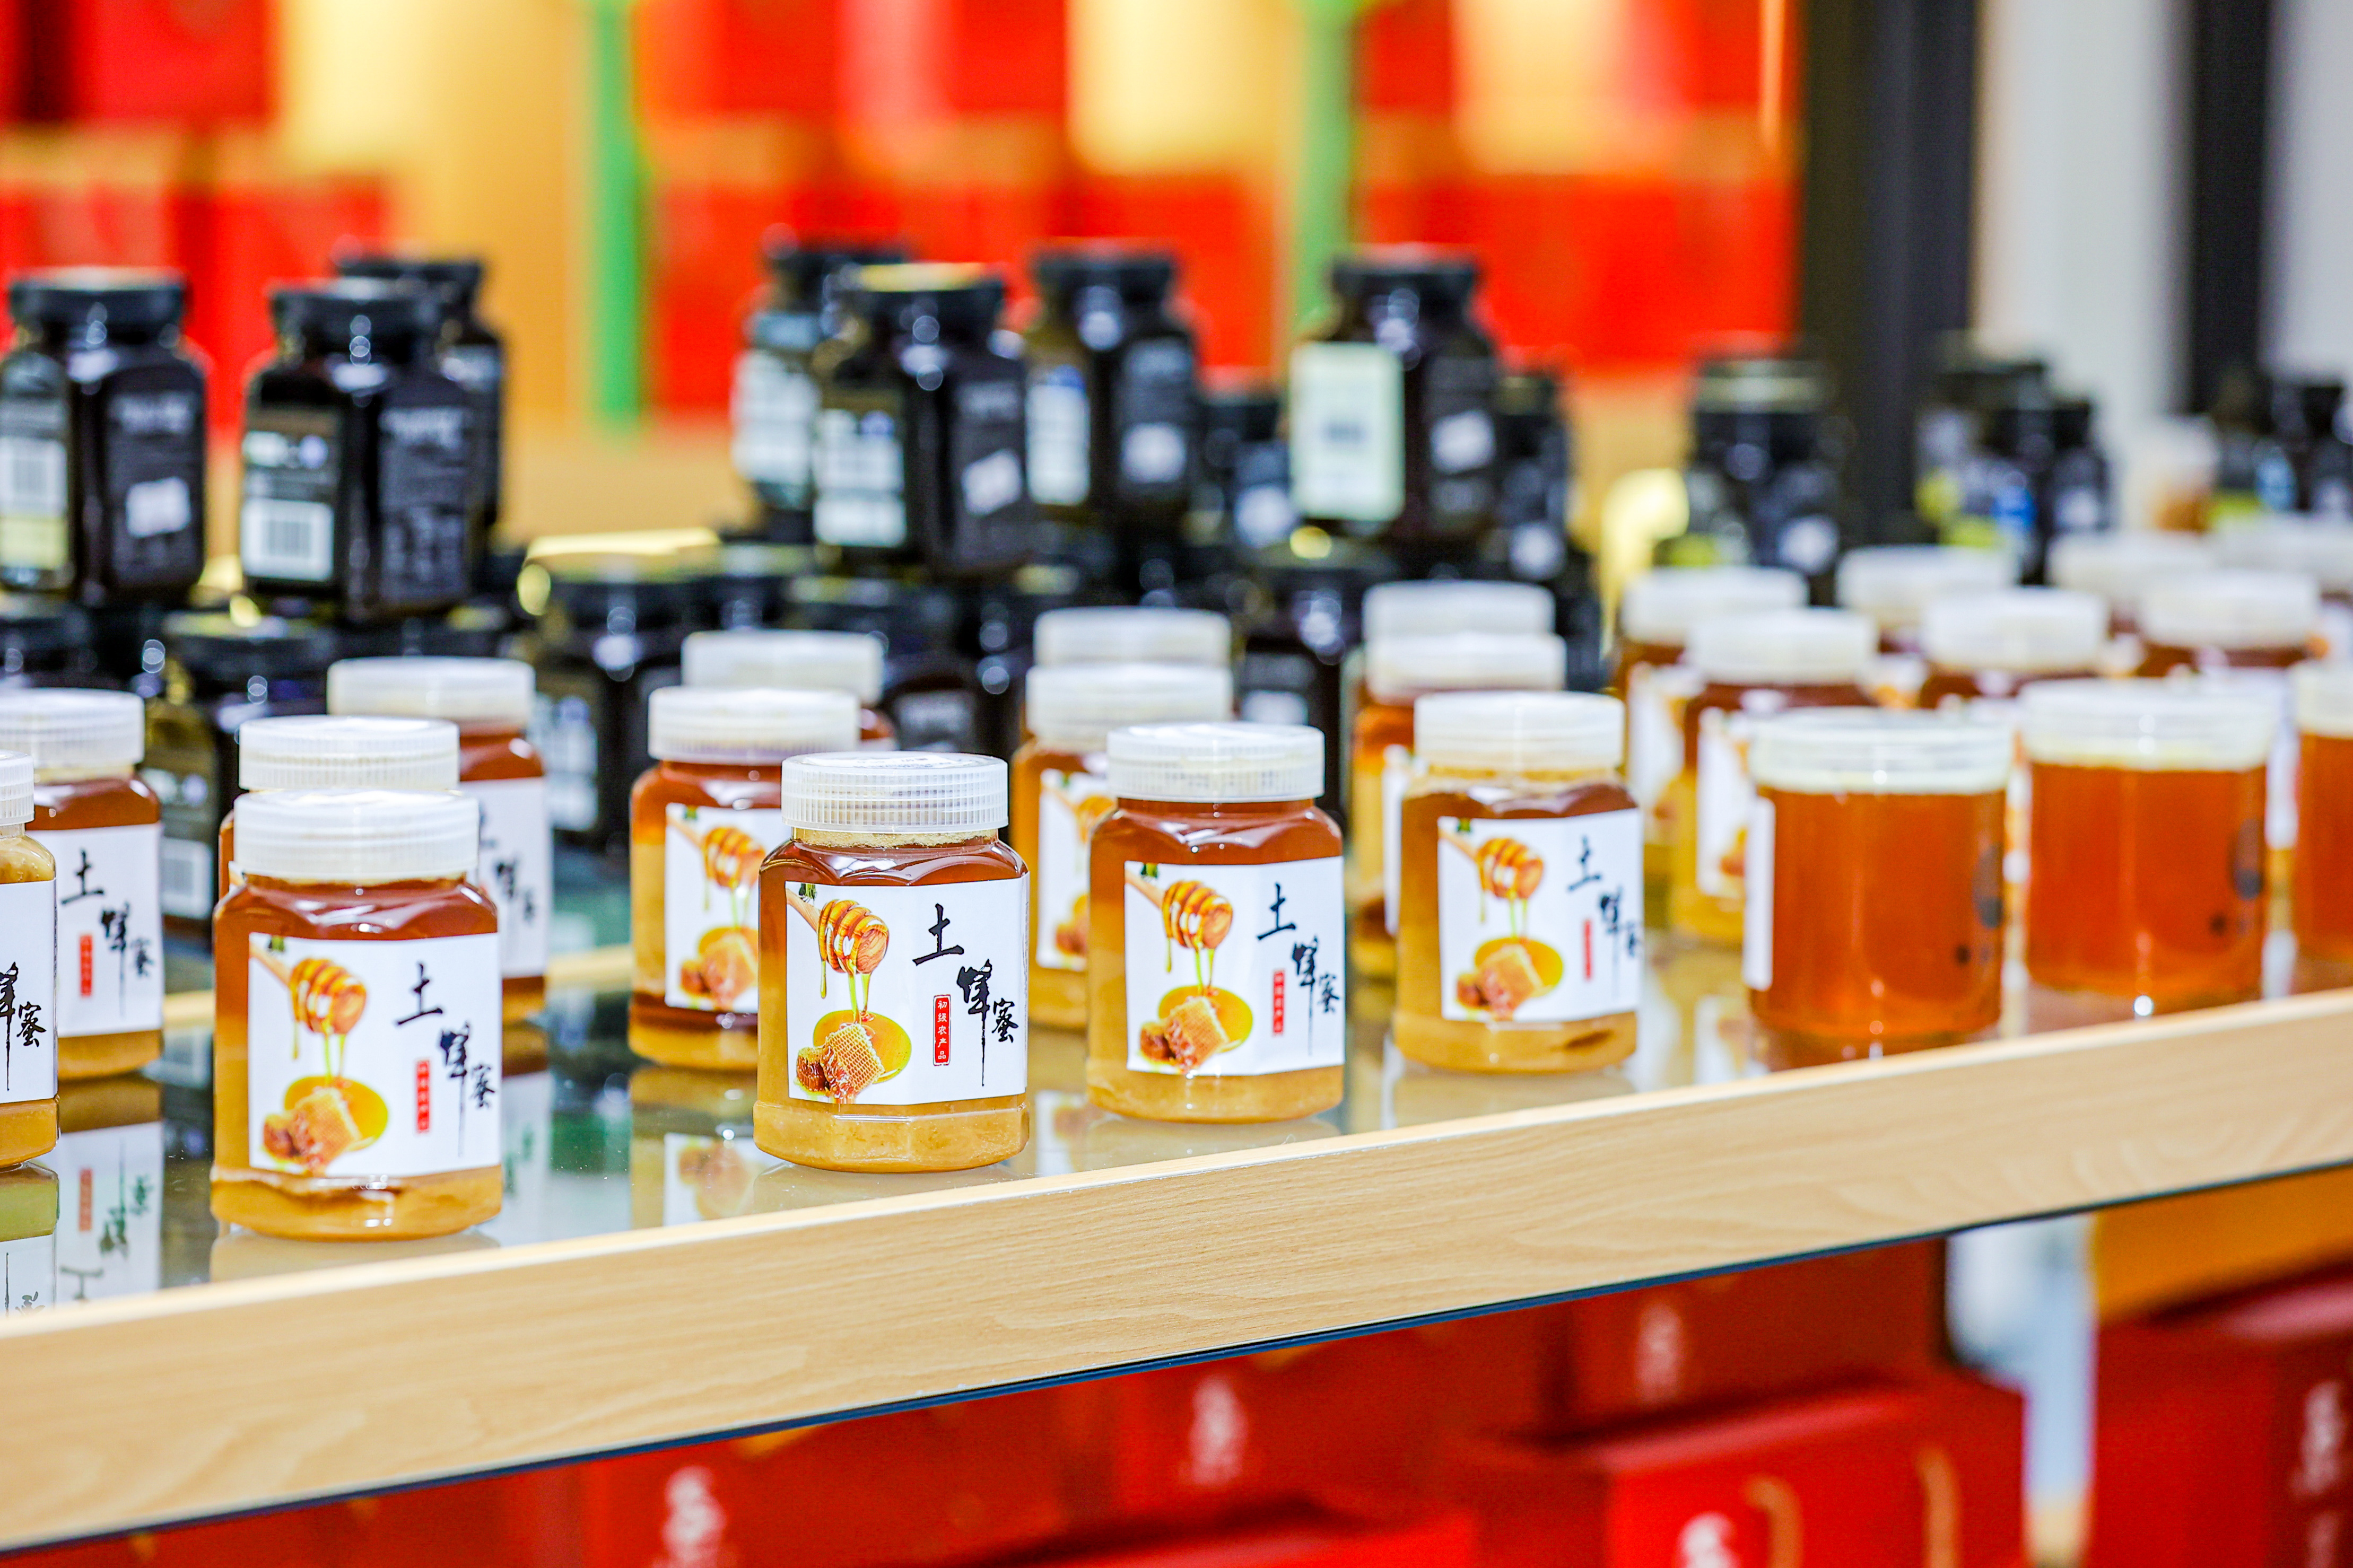 鸭脚木蜜是日馈深汕特别协作区一张共同的农产品名片。